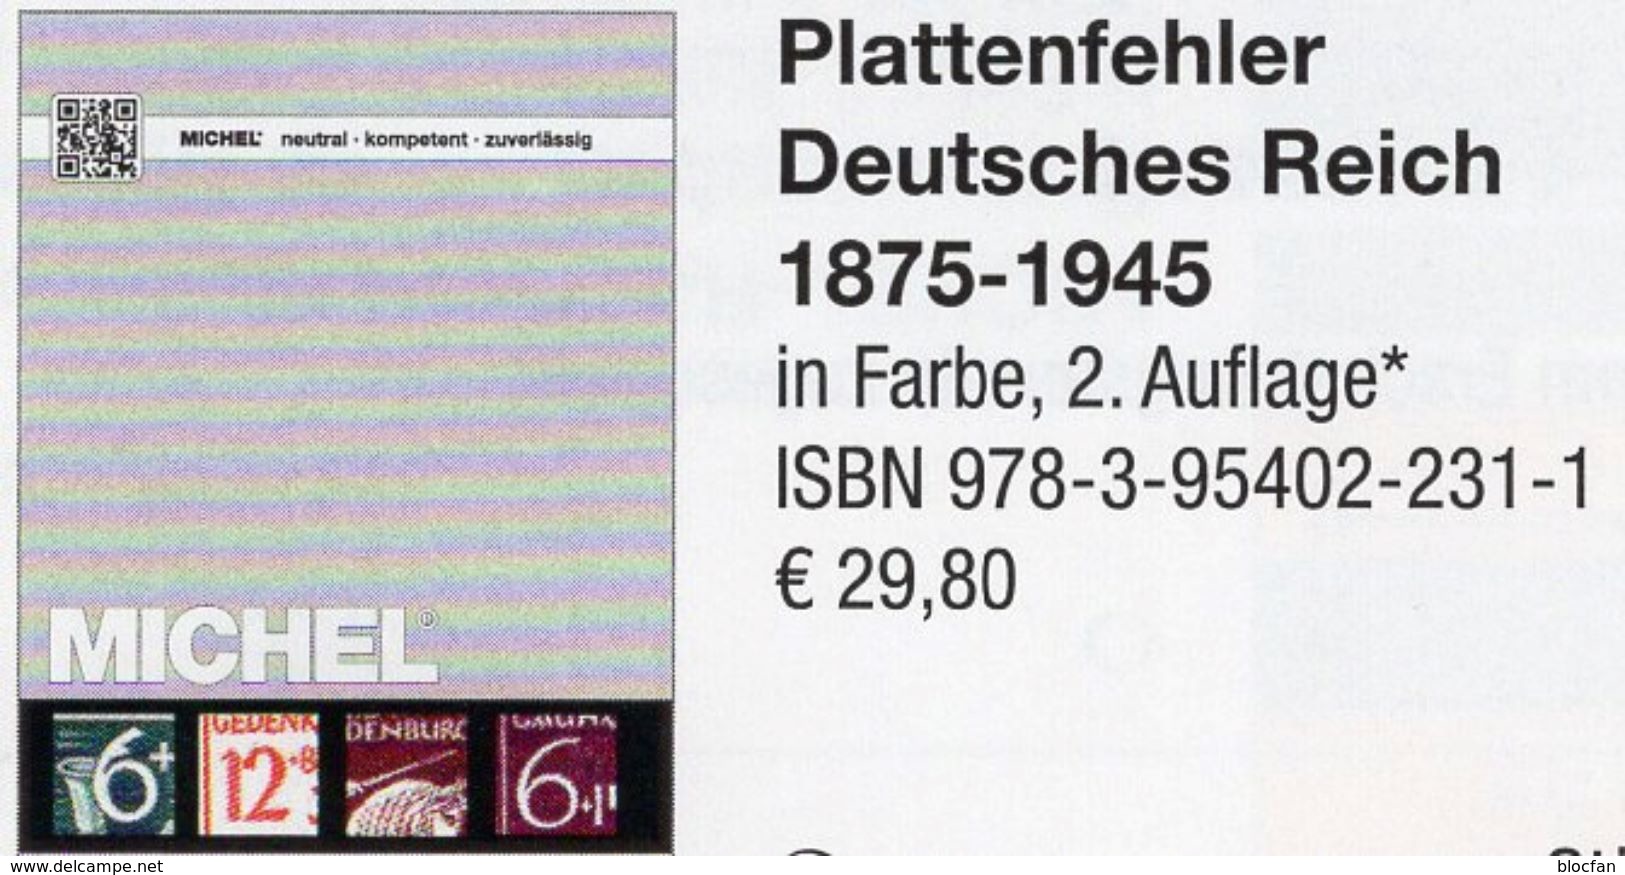 Deutsche Reich 1875-1945 MlCHEL Plattenfehler 2018 New 30€ D Kaiserreich DR 3.Reich Error Special Catalogue Germany - Filatelia